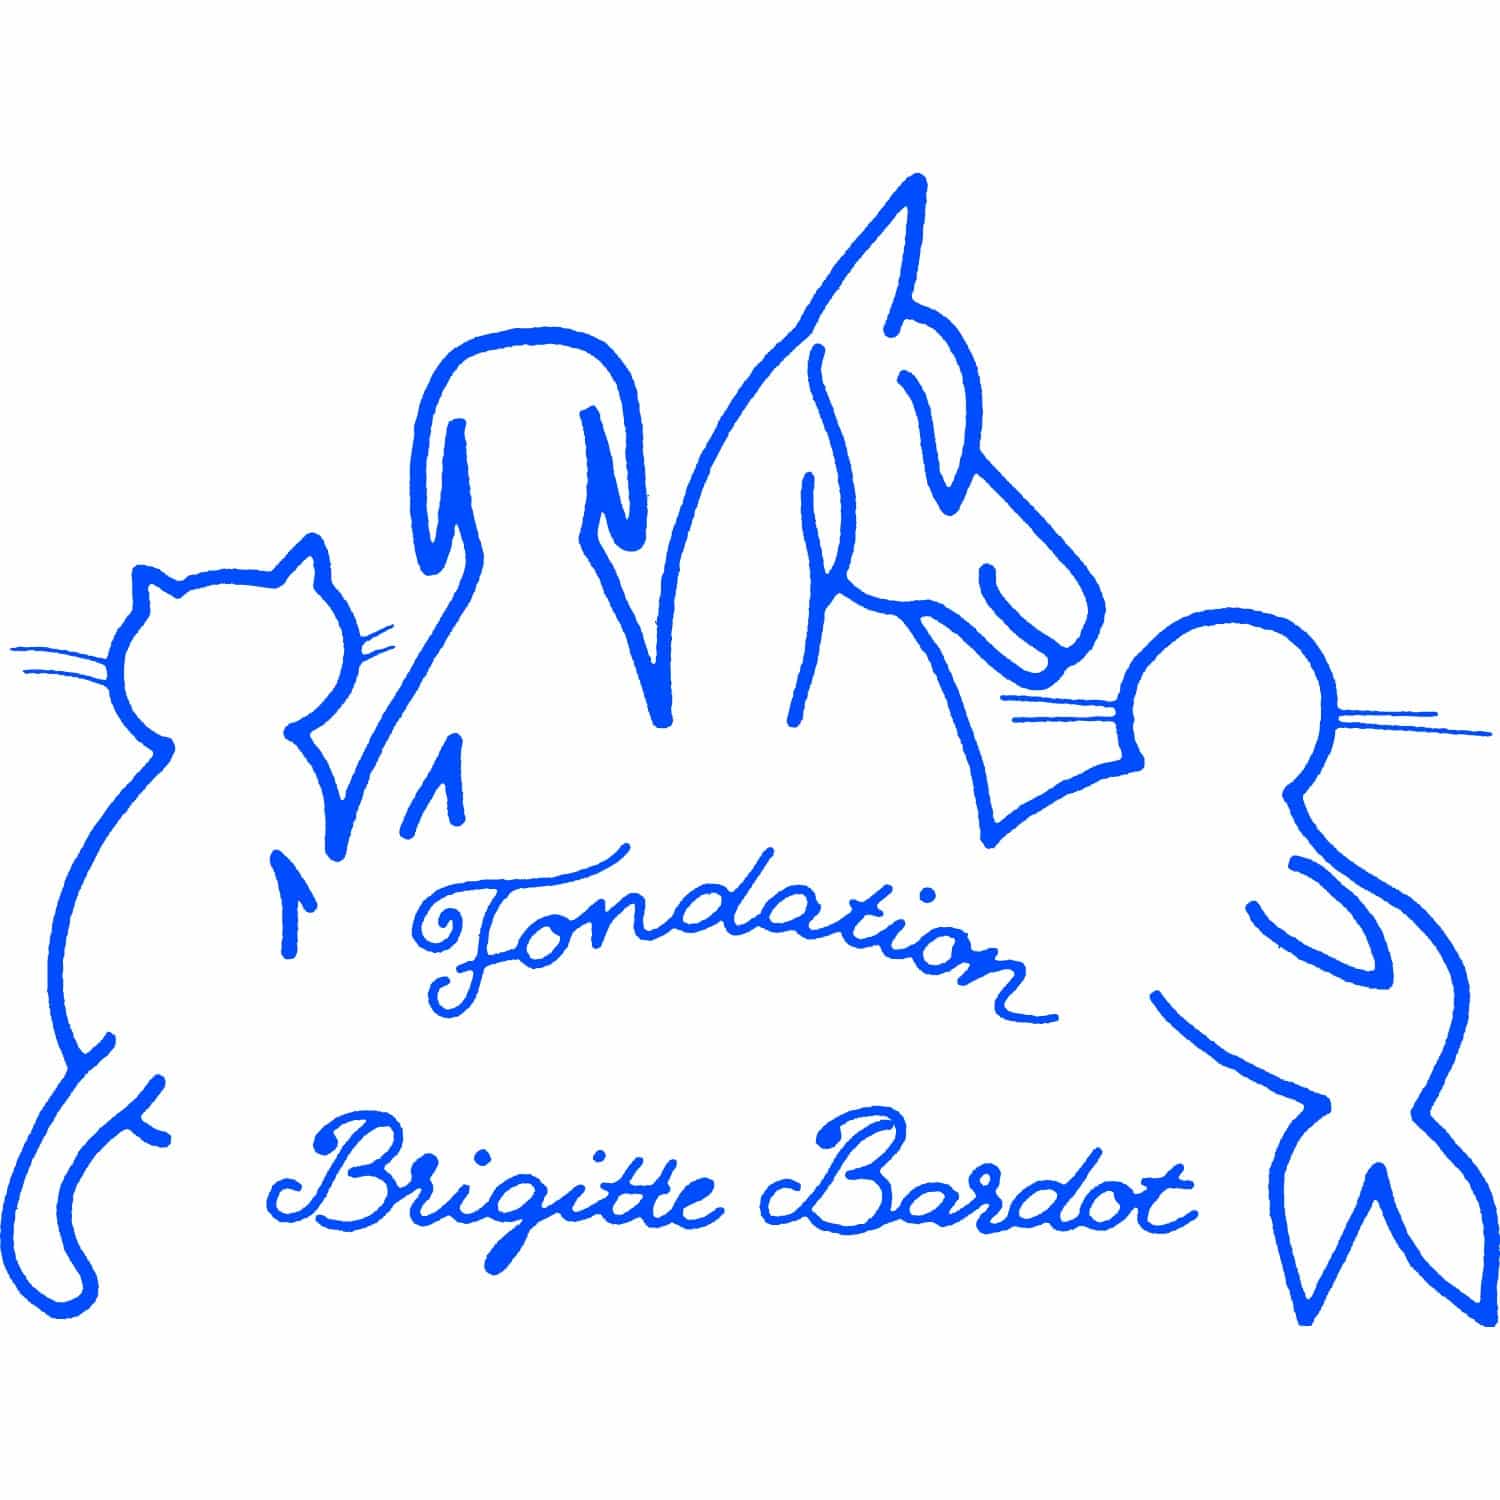 Coordonnées de la Fondation de Brigitte Bardot (adresse postale, email et numéro de téléphone) Contacter BRIGITTE BARDOT | Écrire à #BrigitteBardot